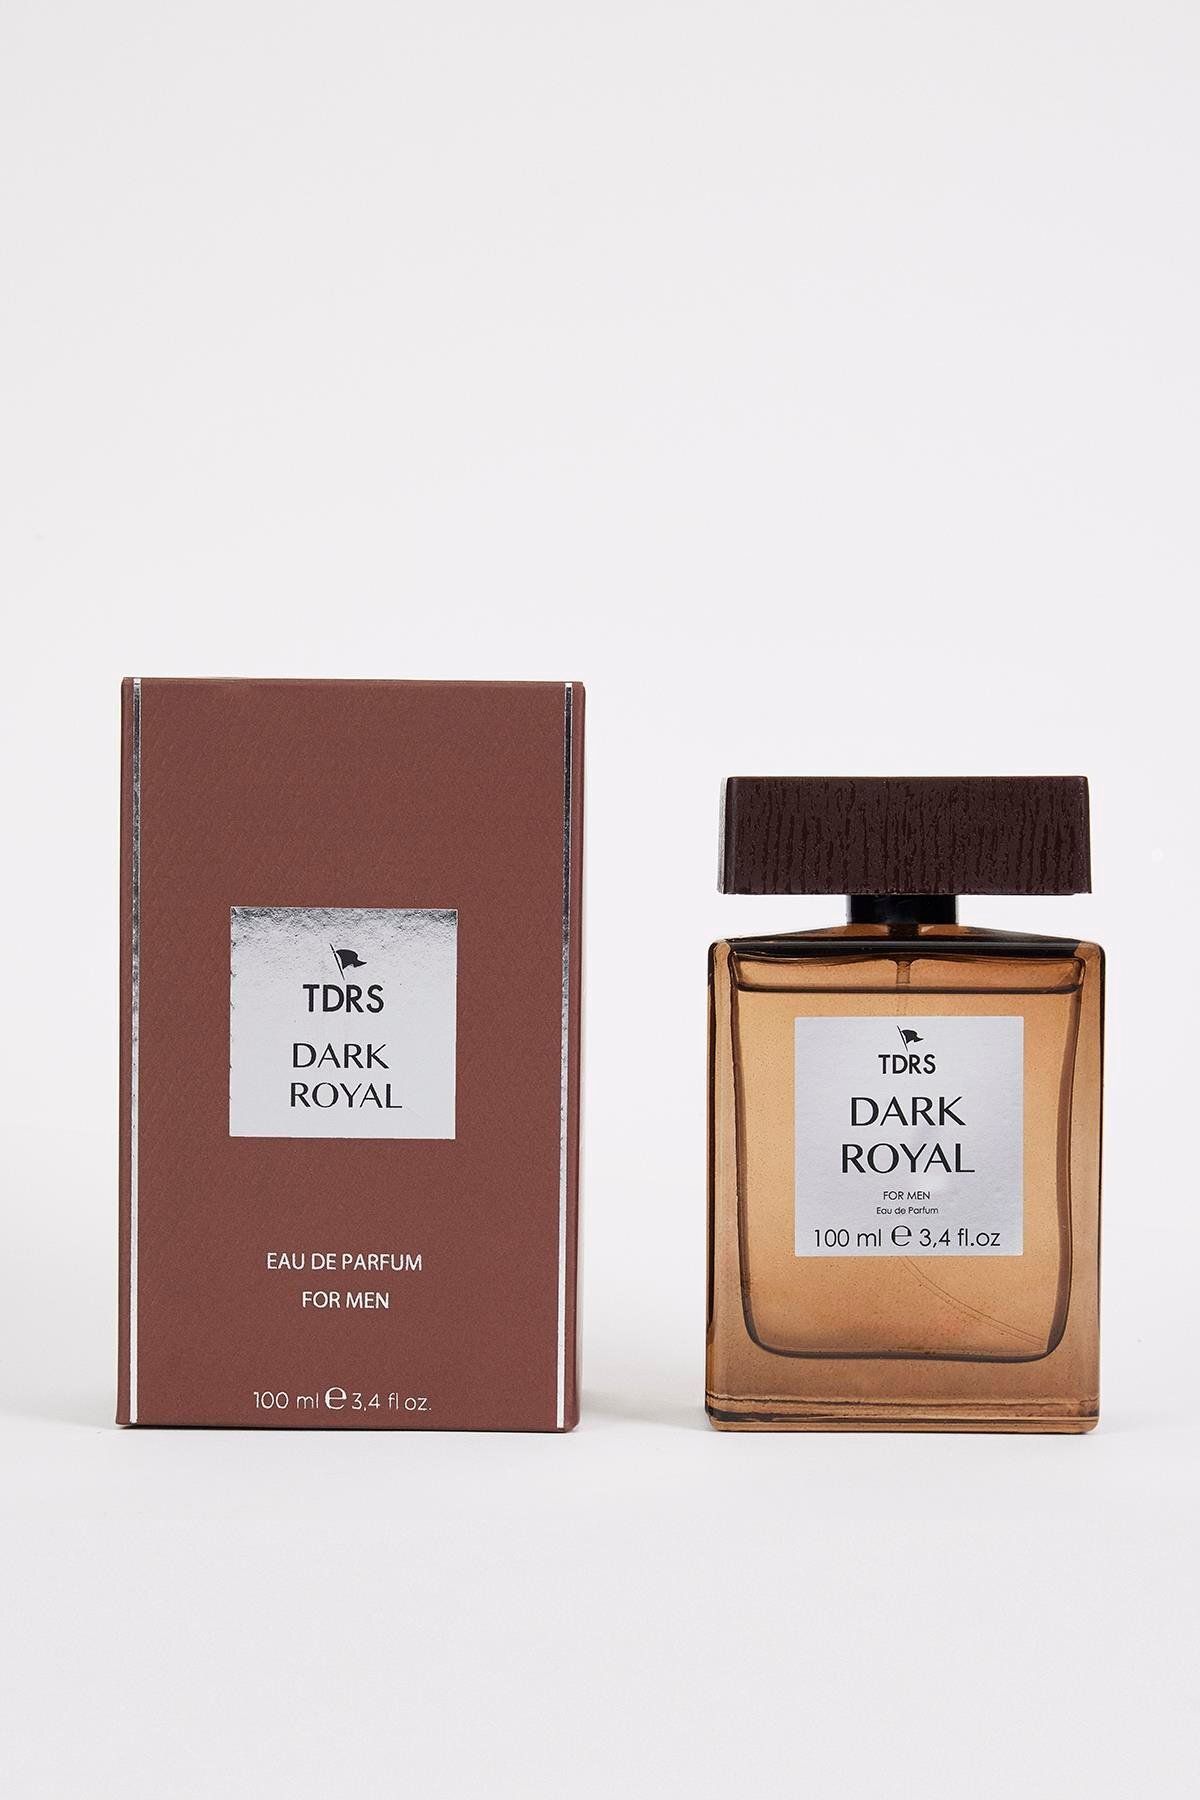 TDRS Dark Royal Ozonik Özel Seri Uzun Süre Kalıcı 100 ml Edp Erkek Parfüm